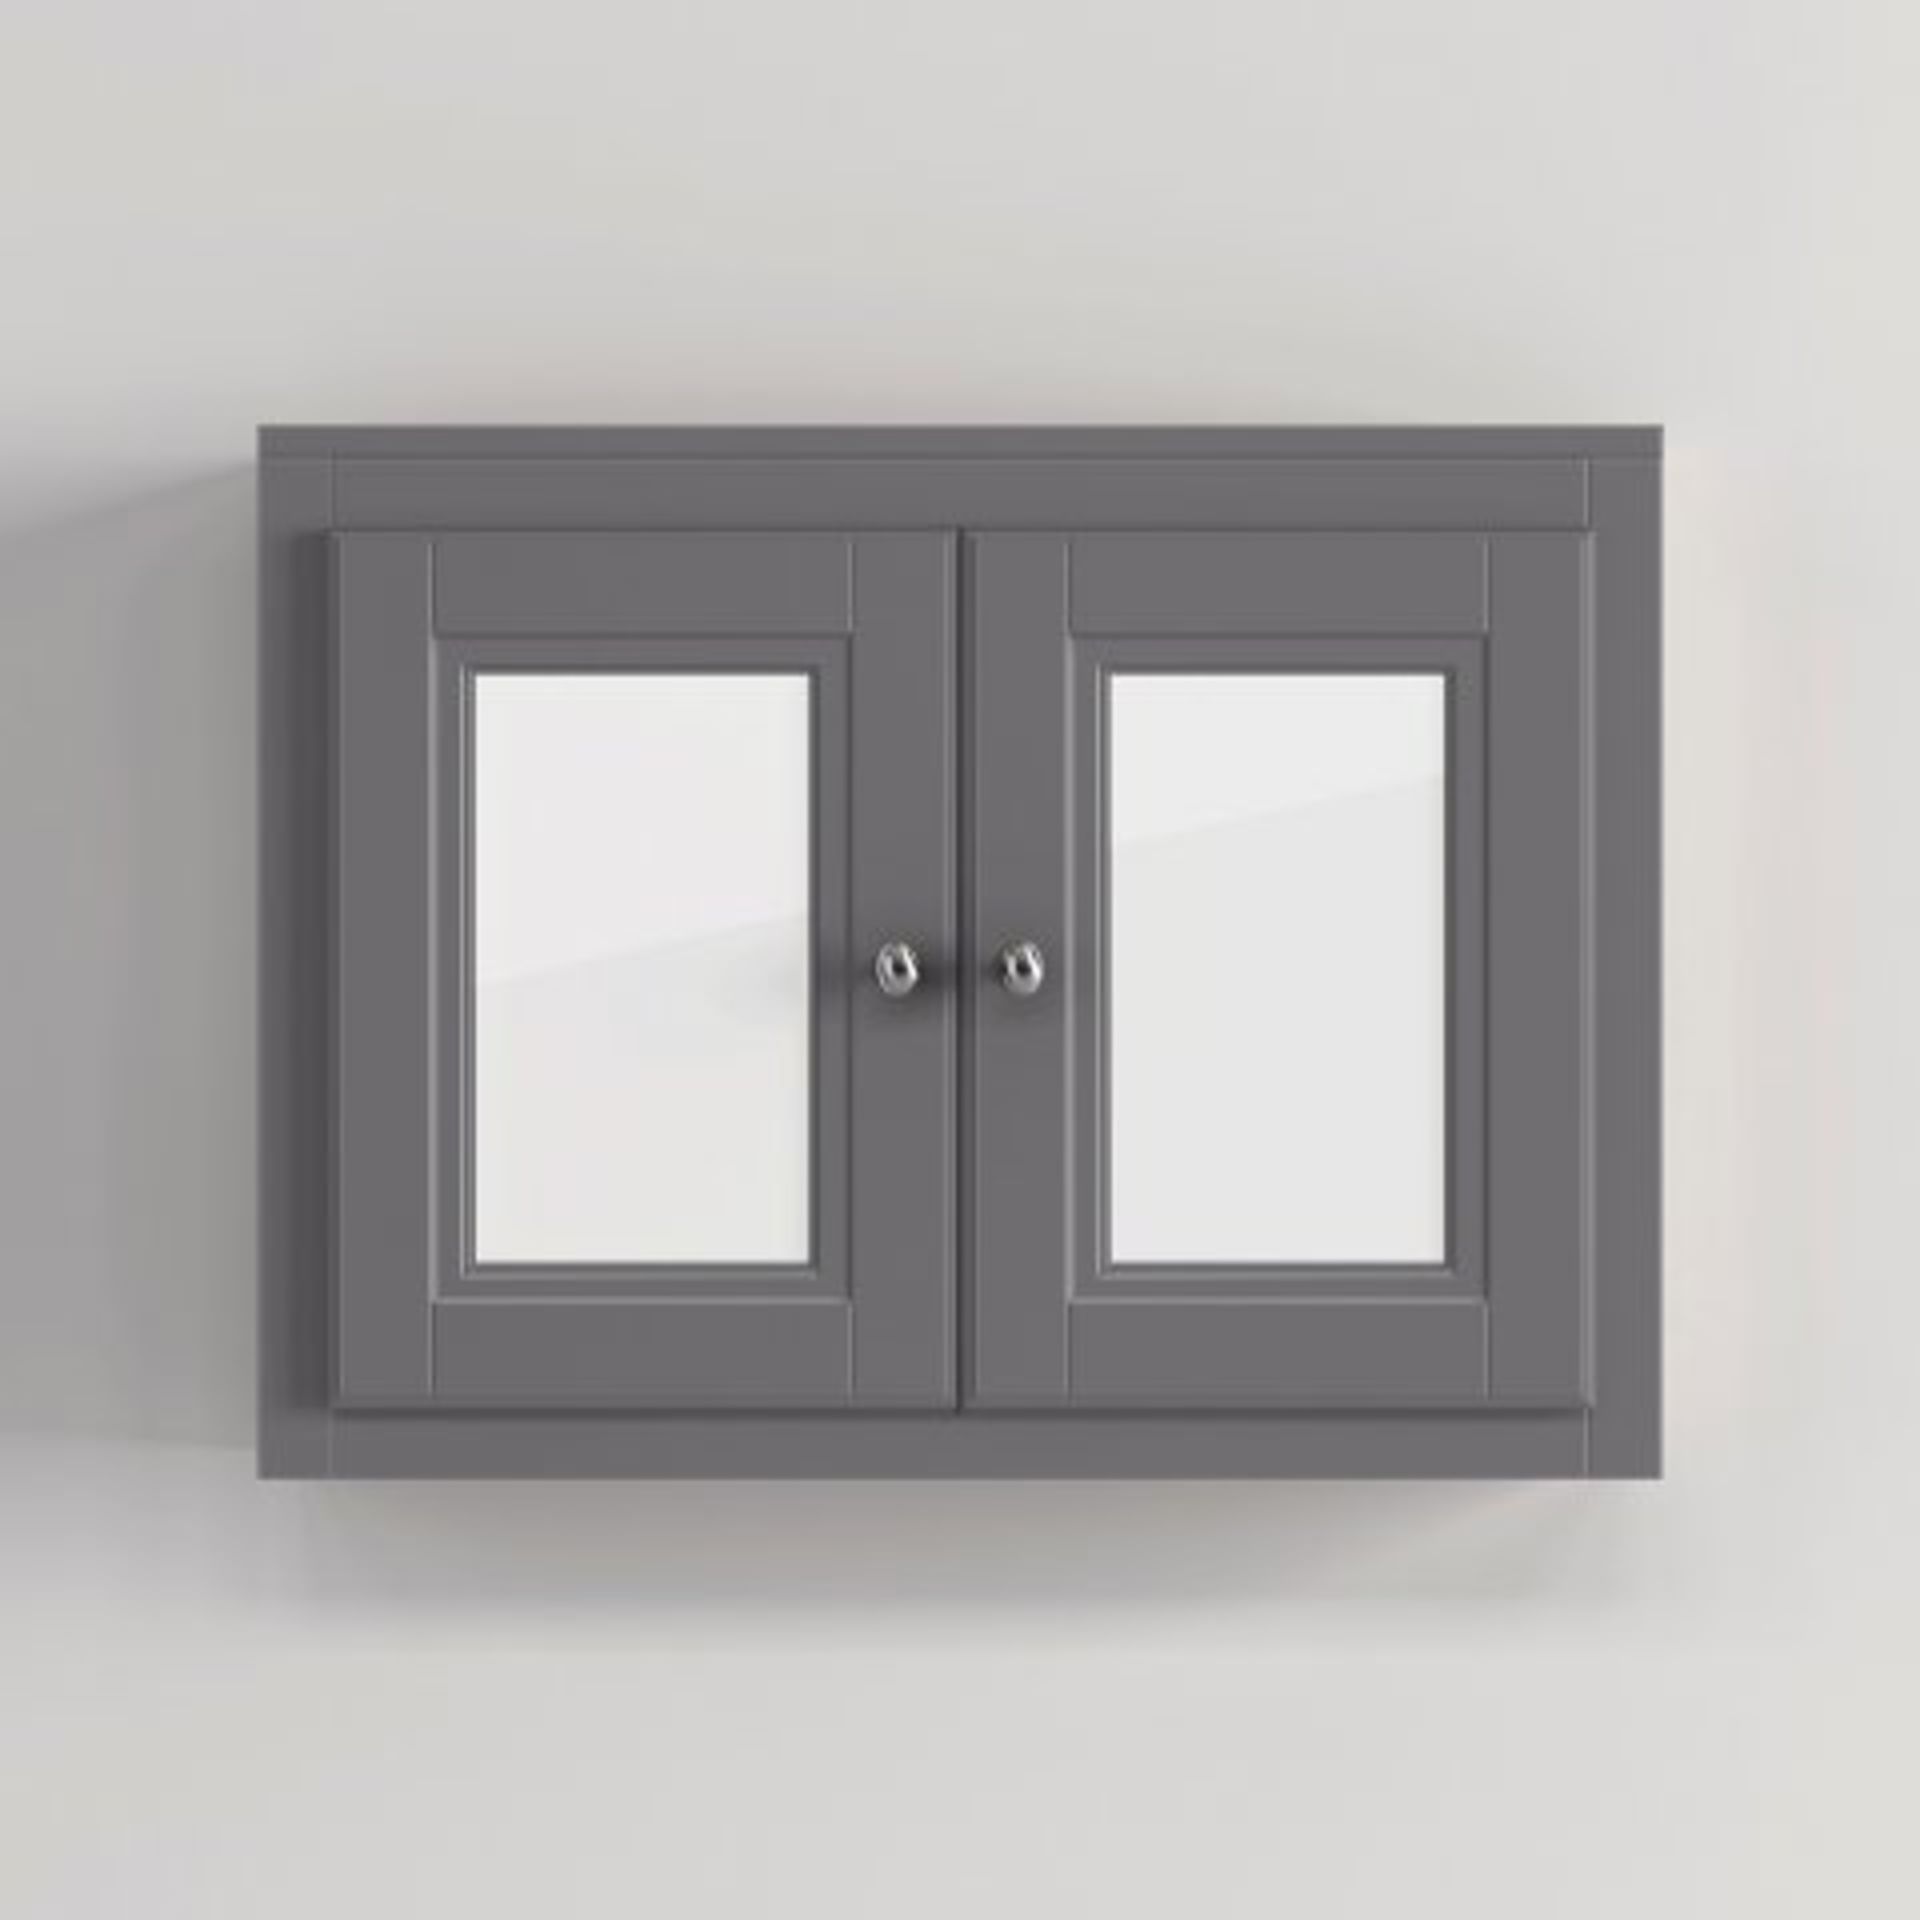 (29) 800mm Cambridge Midnight Grey Double Door Mirror Cabinet Our Cambridge Midnight Grey mirror - Image 3 of 3